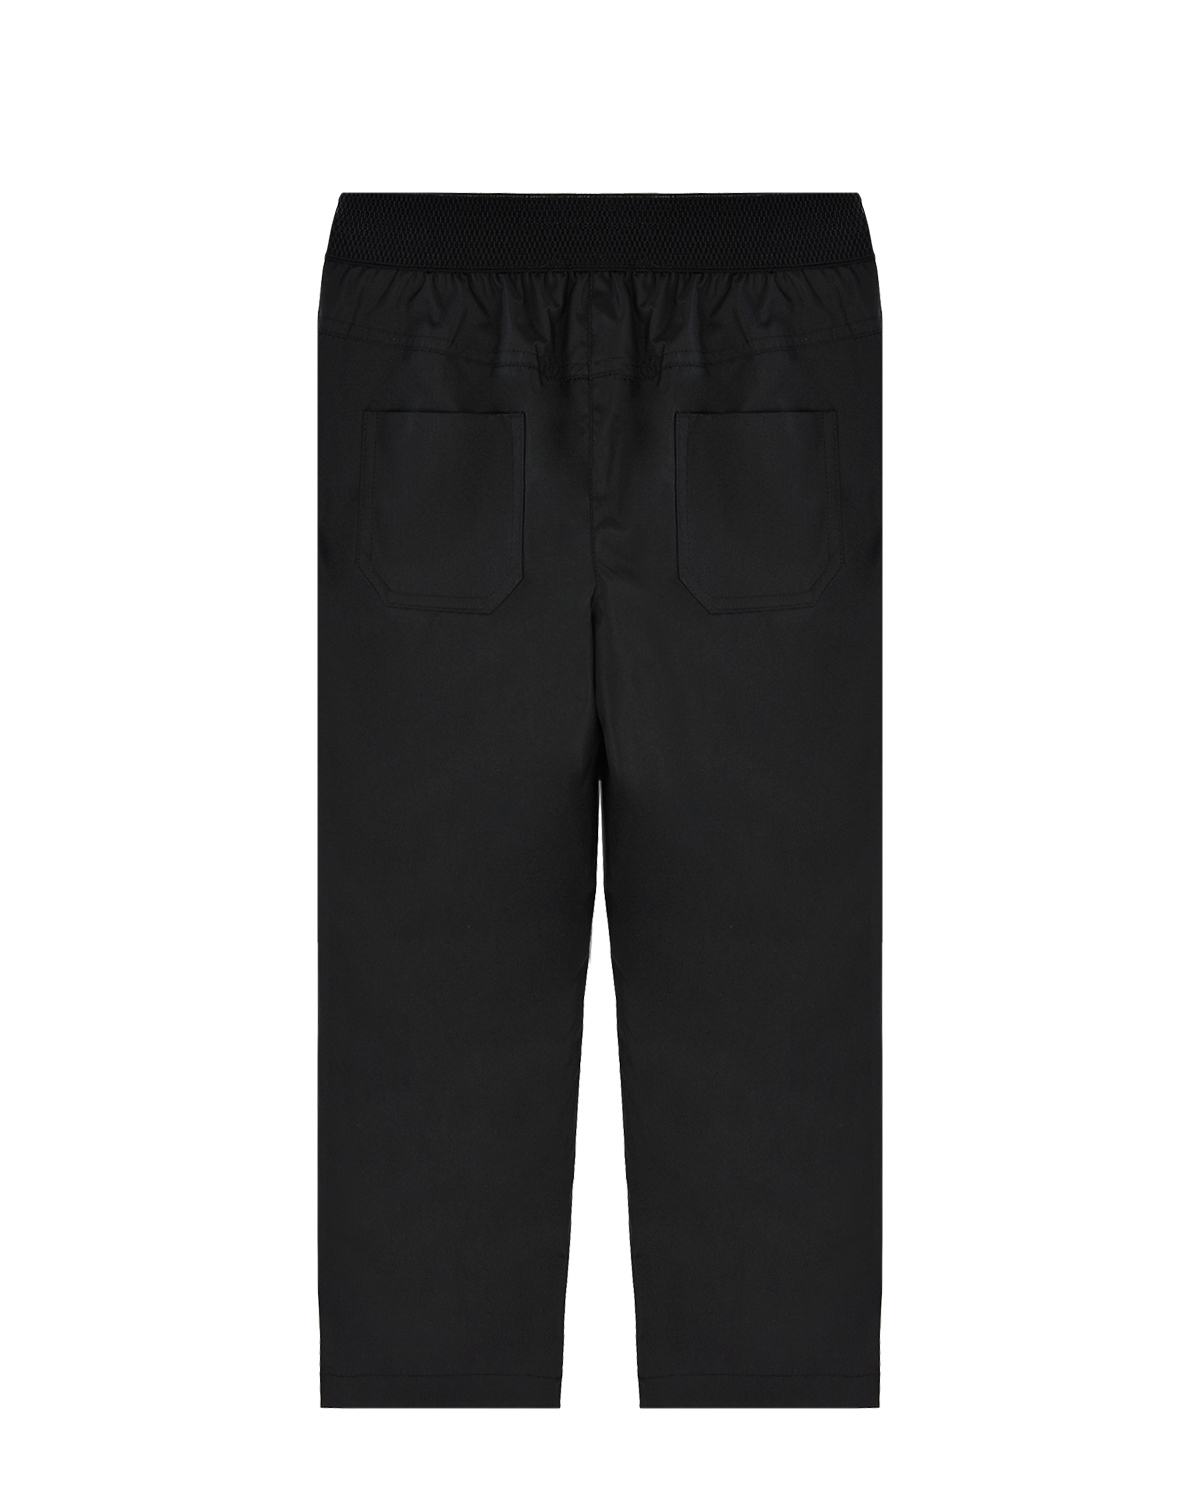 Черные утепленные брюки Dan Maralex детские, размер 116, цвет черный - фото 2